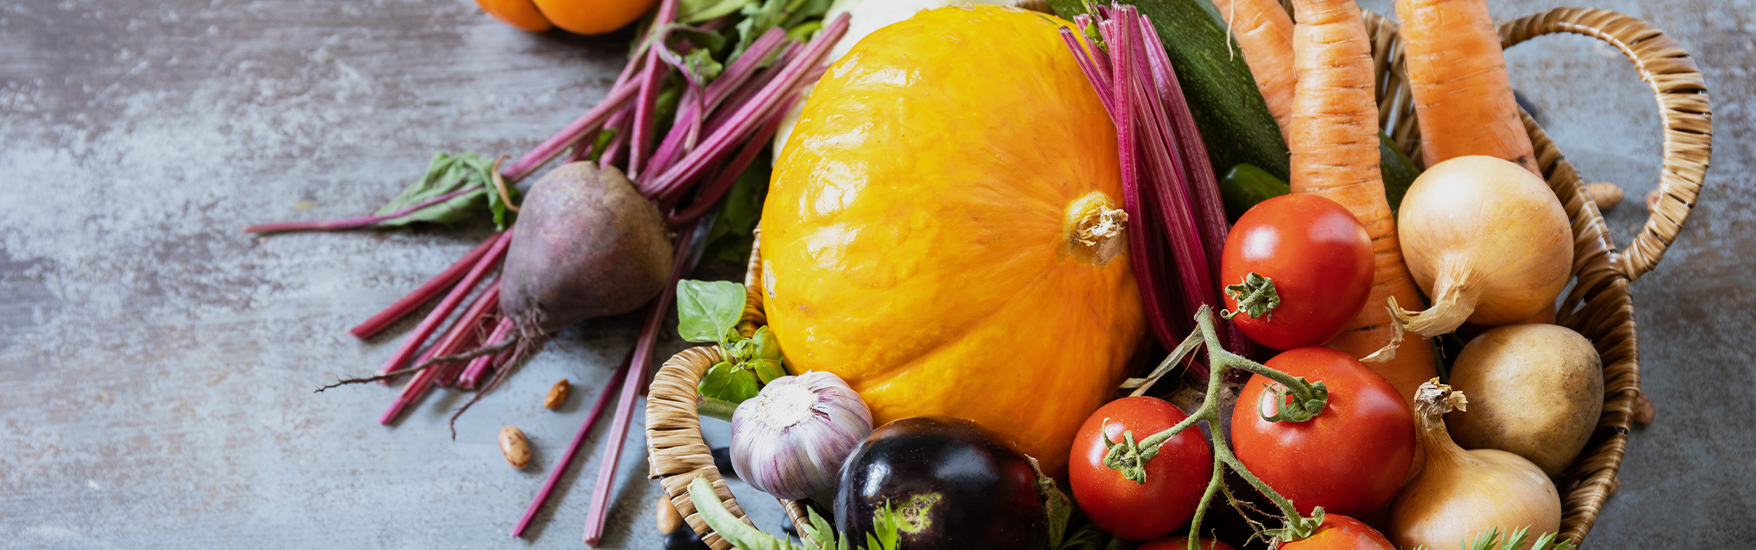 Hortícolas: como comer mais legumes e verduras